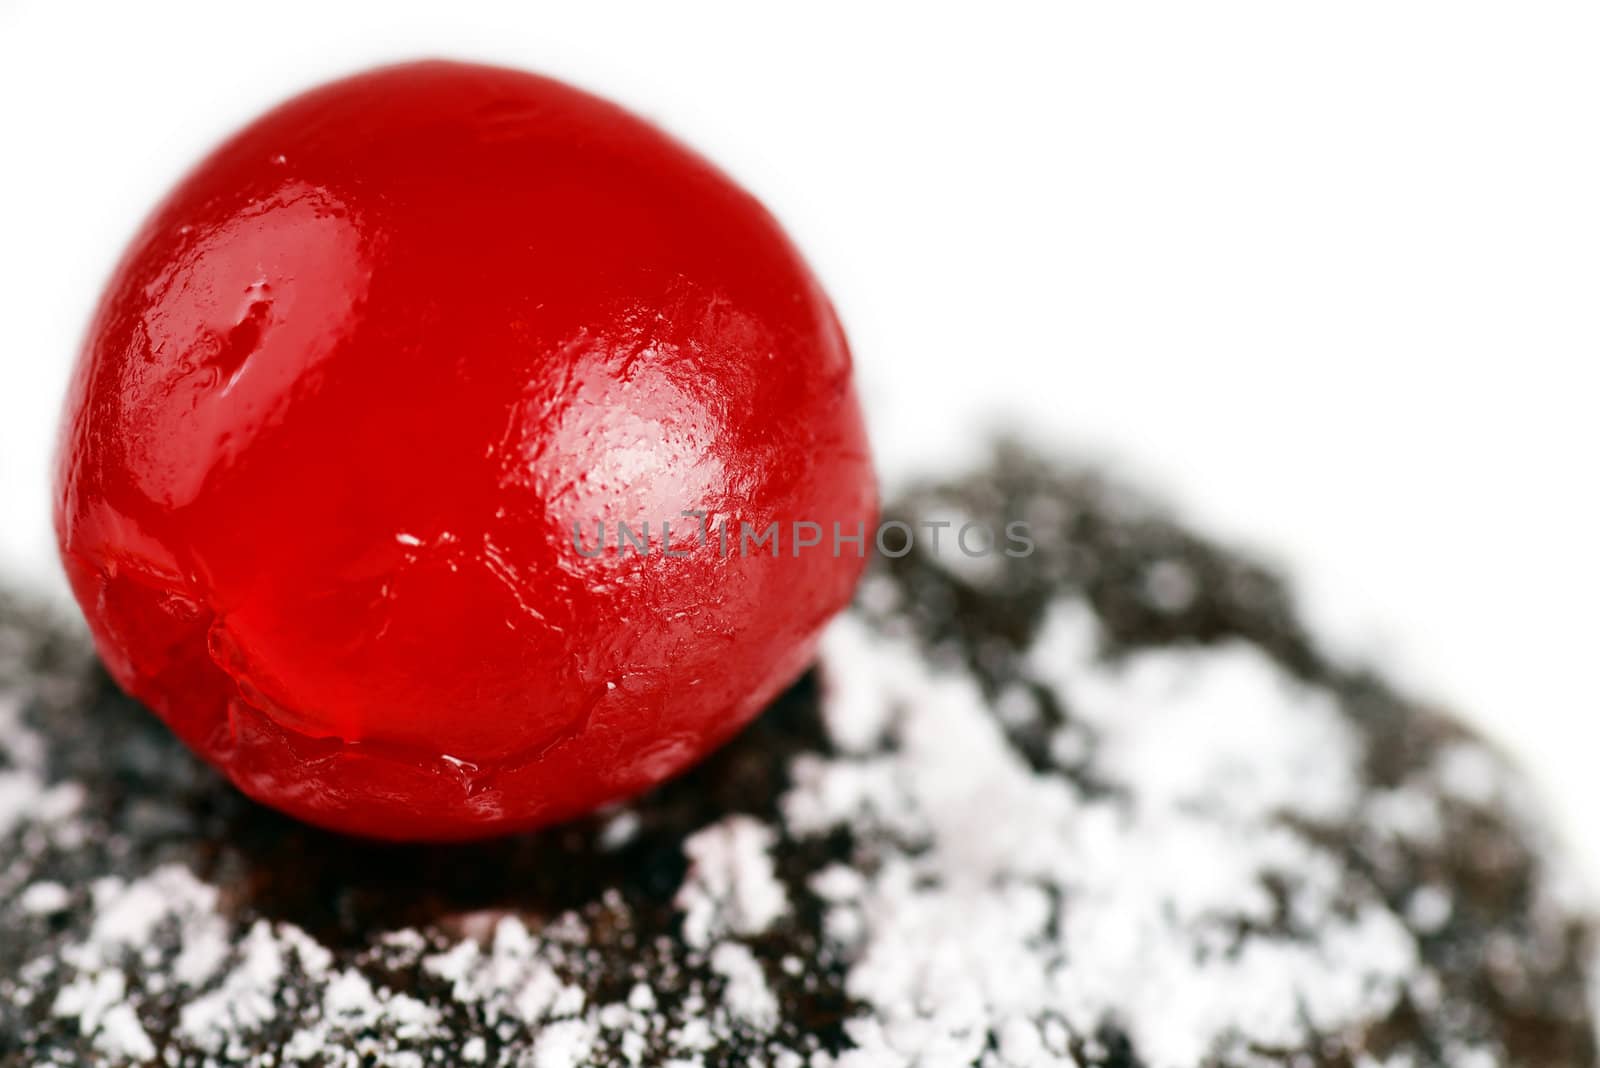 Maraschino cherry on chocolate cake by Mirage3